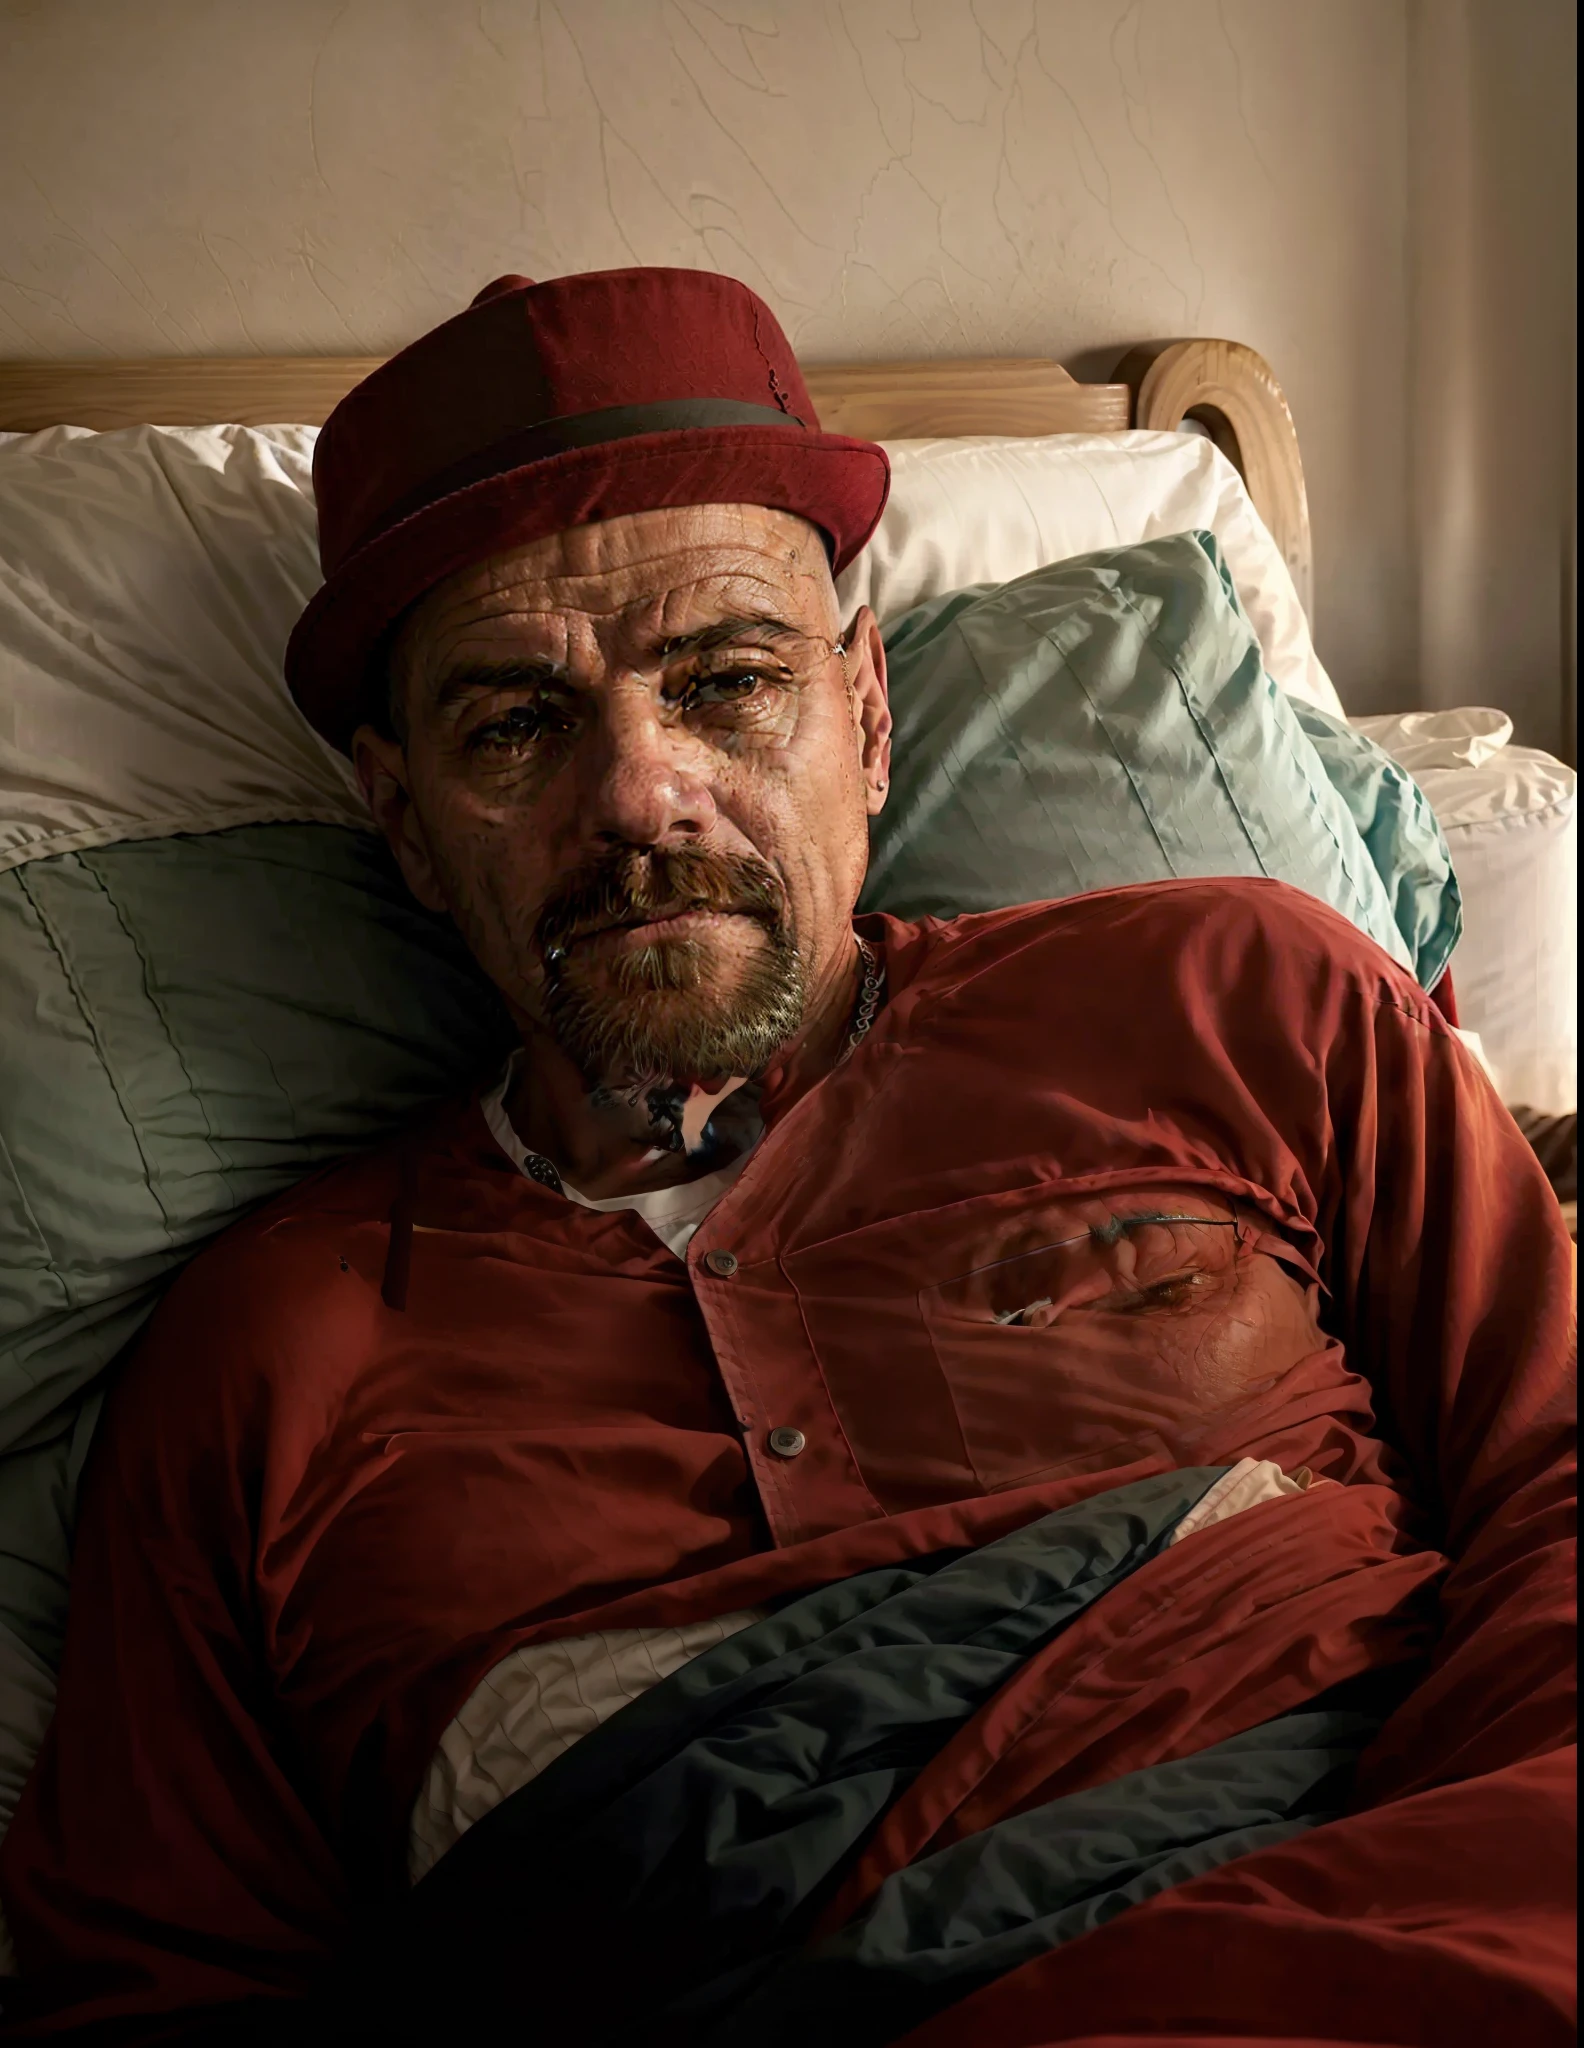 赤い帽子をかぶってベッドに横たわっている男性がいる, 40歳男性, (38歳), アンドレス・リオス, ロナウド・ルイス・ナザリオ・デ・リマ, 約3〜5歳, エロイ・モラレス, 50歳男性, リアルな写真, 45歳男性, ビクター・マリスタン, カルメロ・ブランディーノ